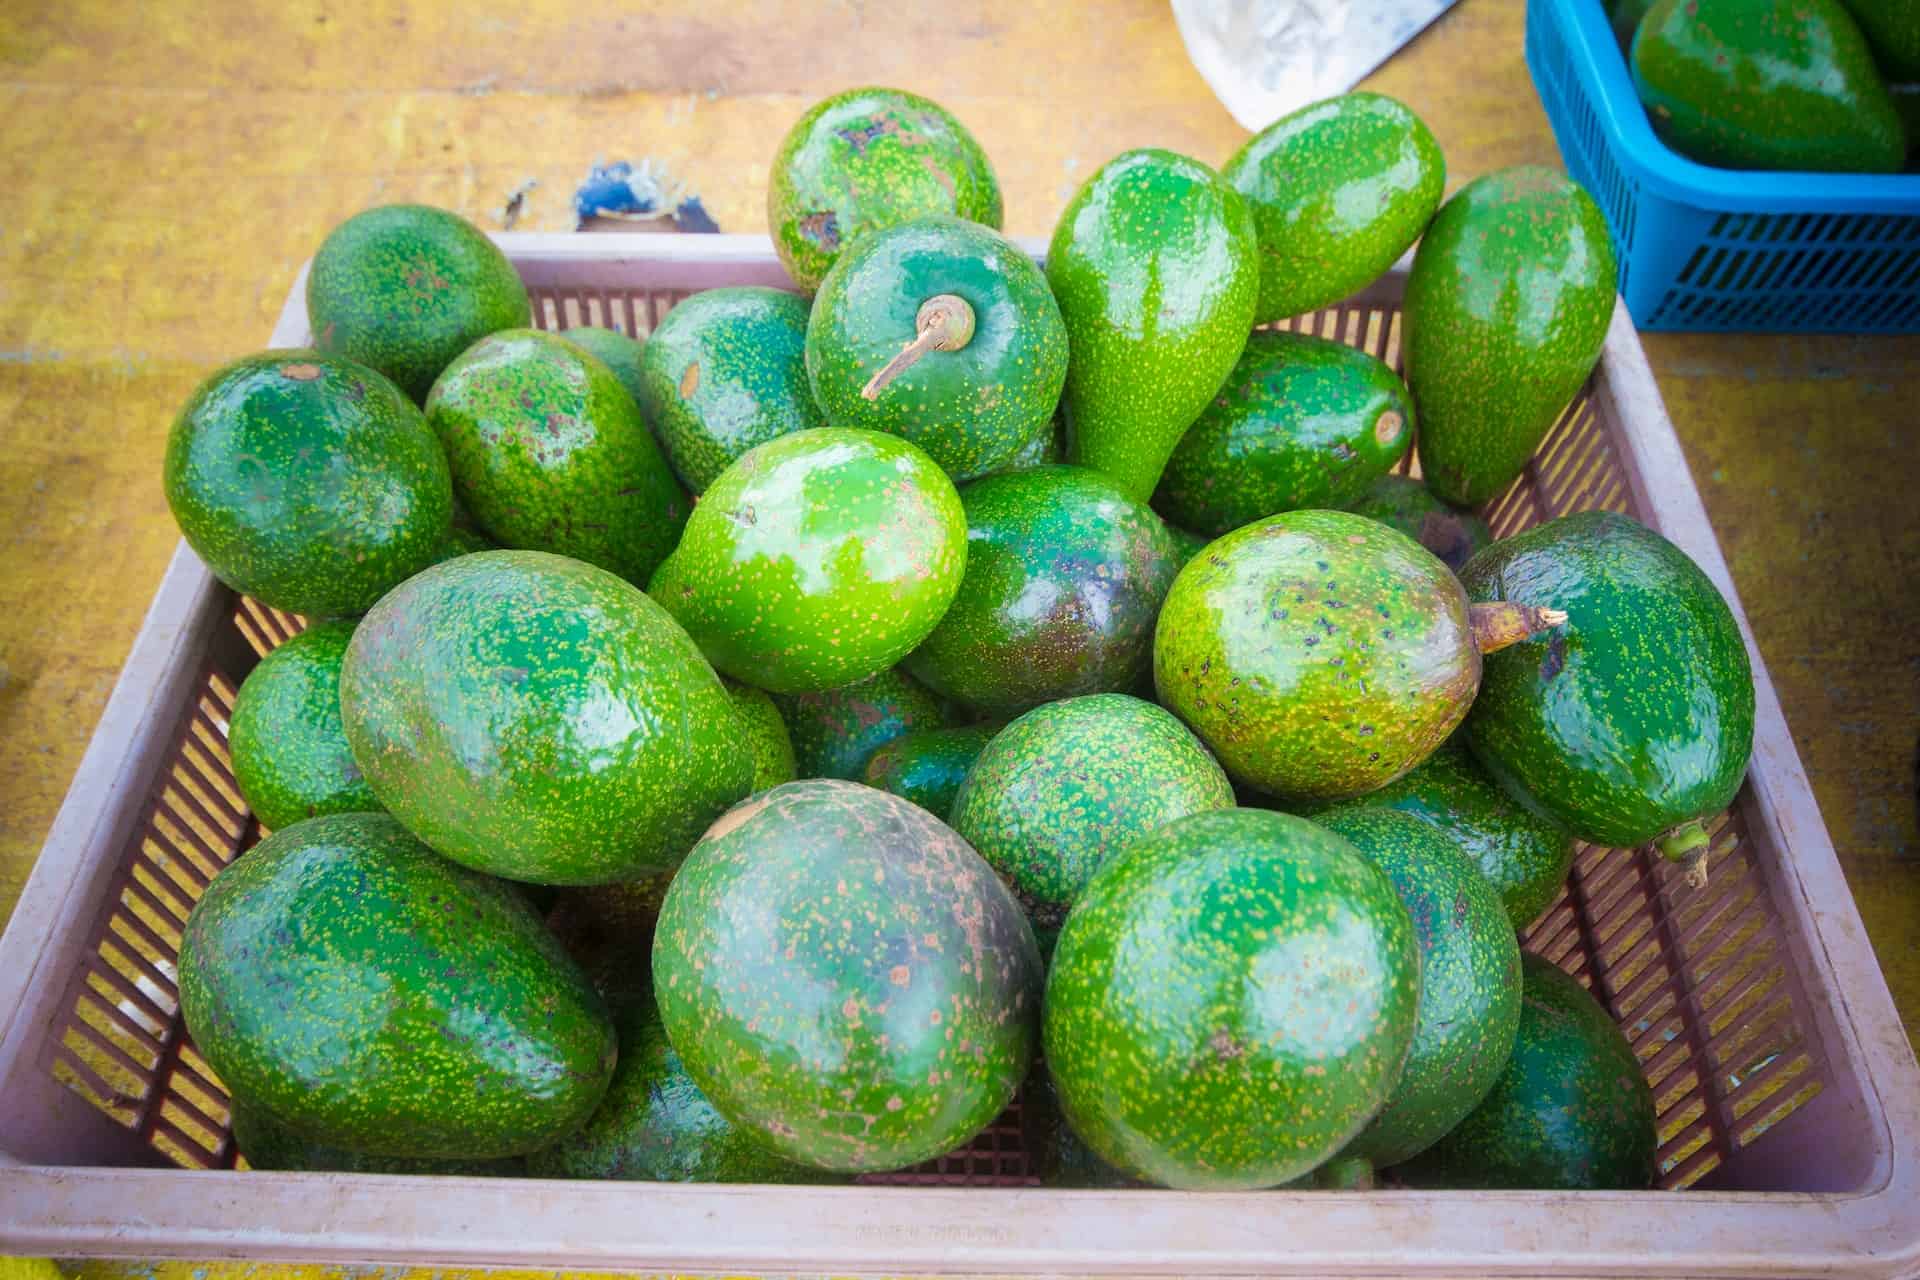 a basket of green avocados